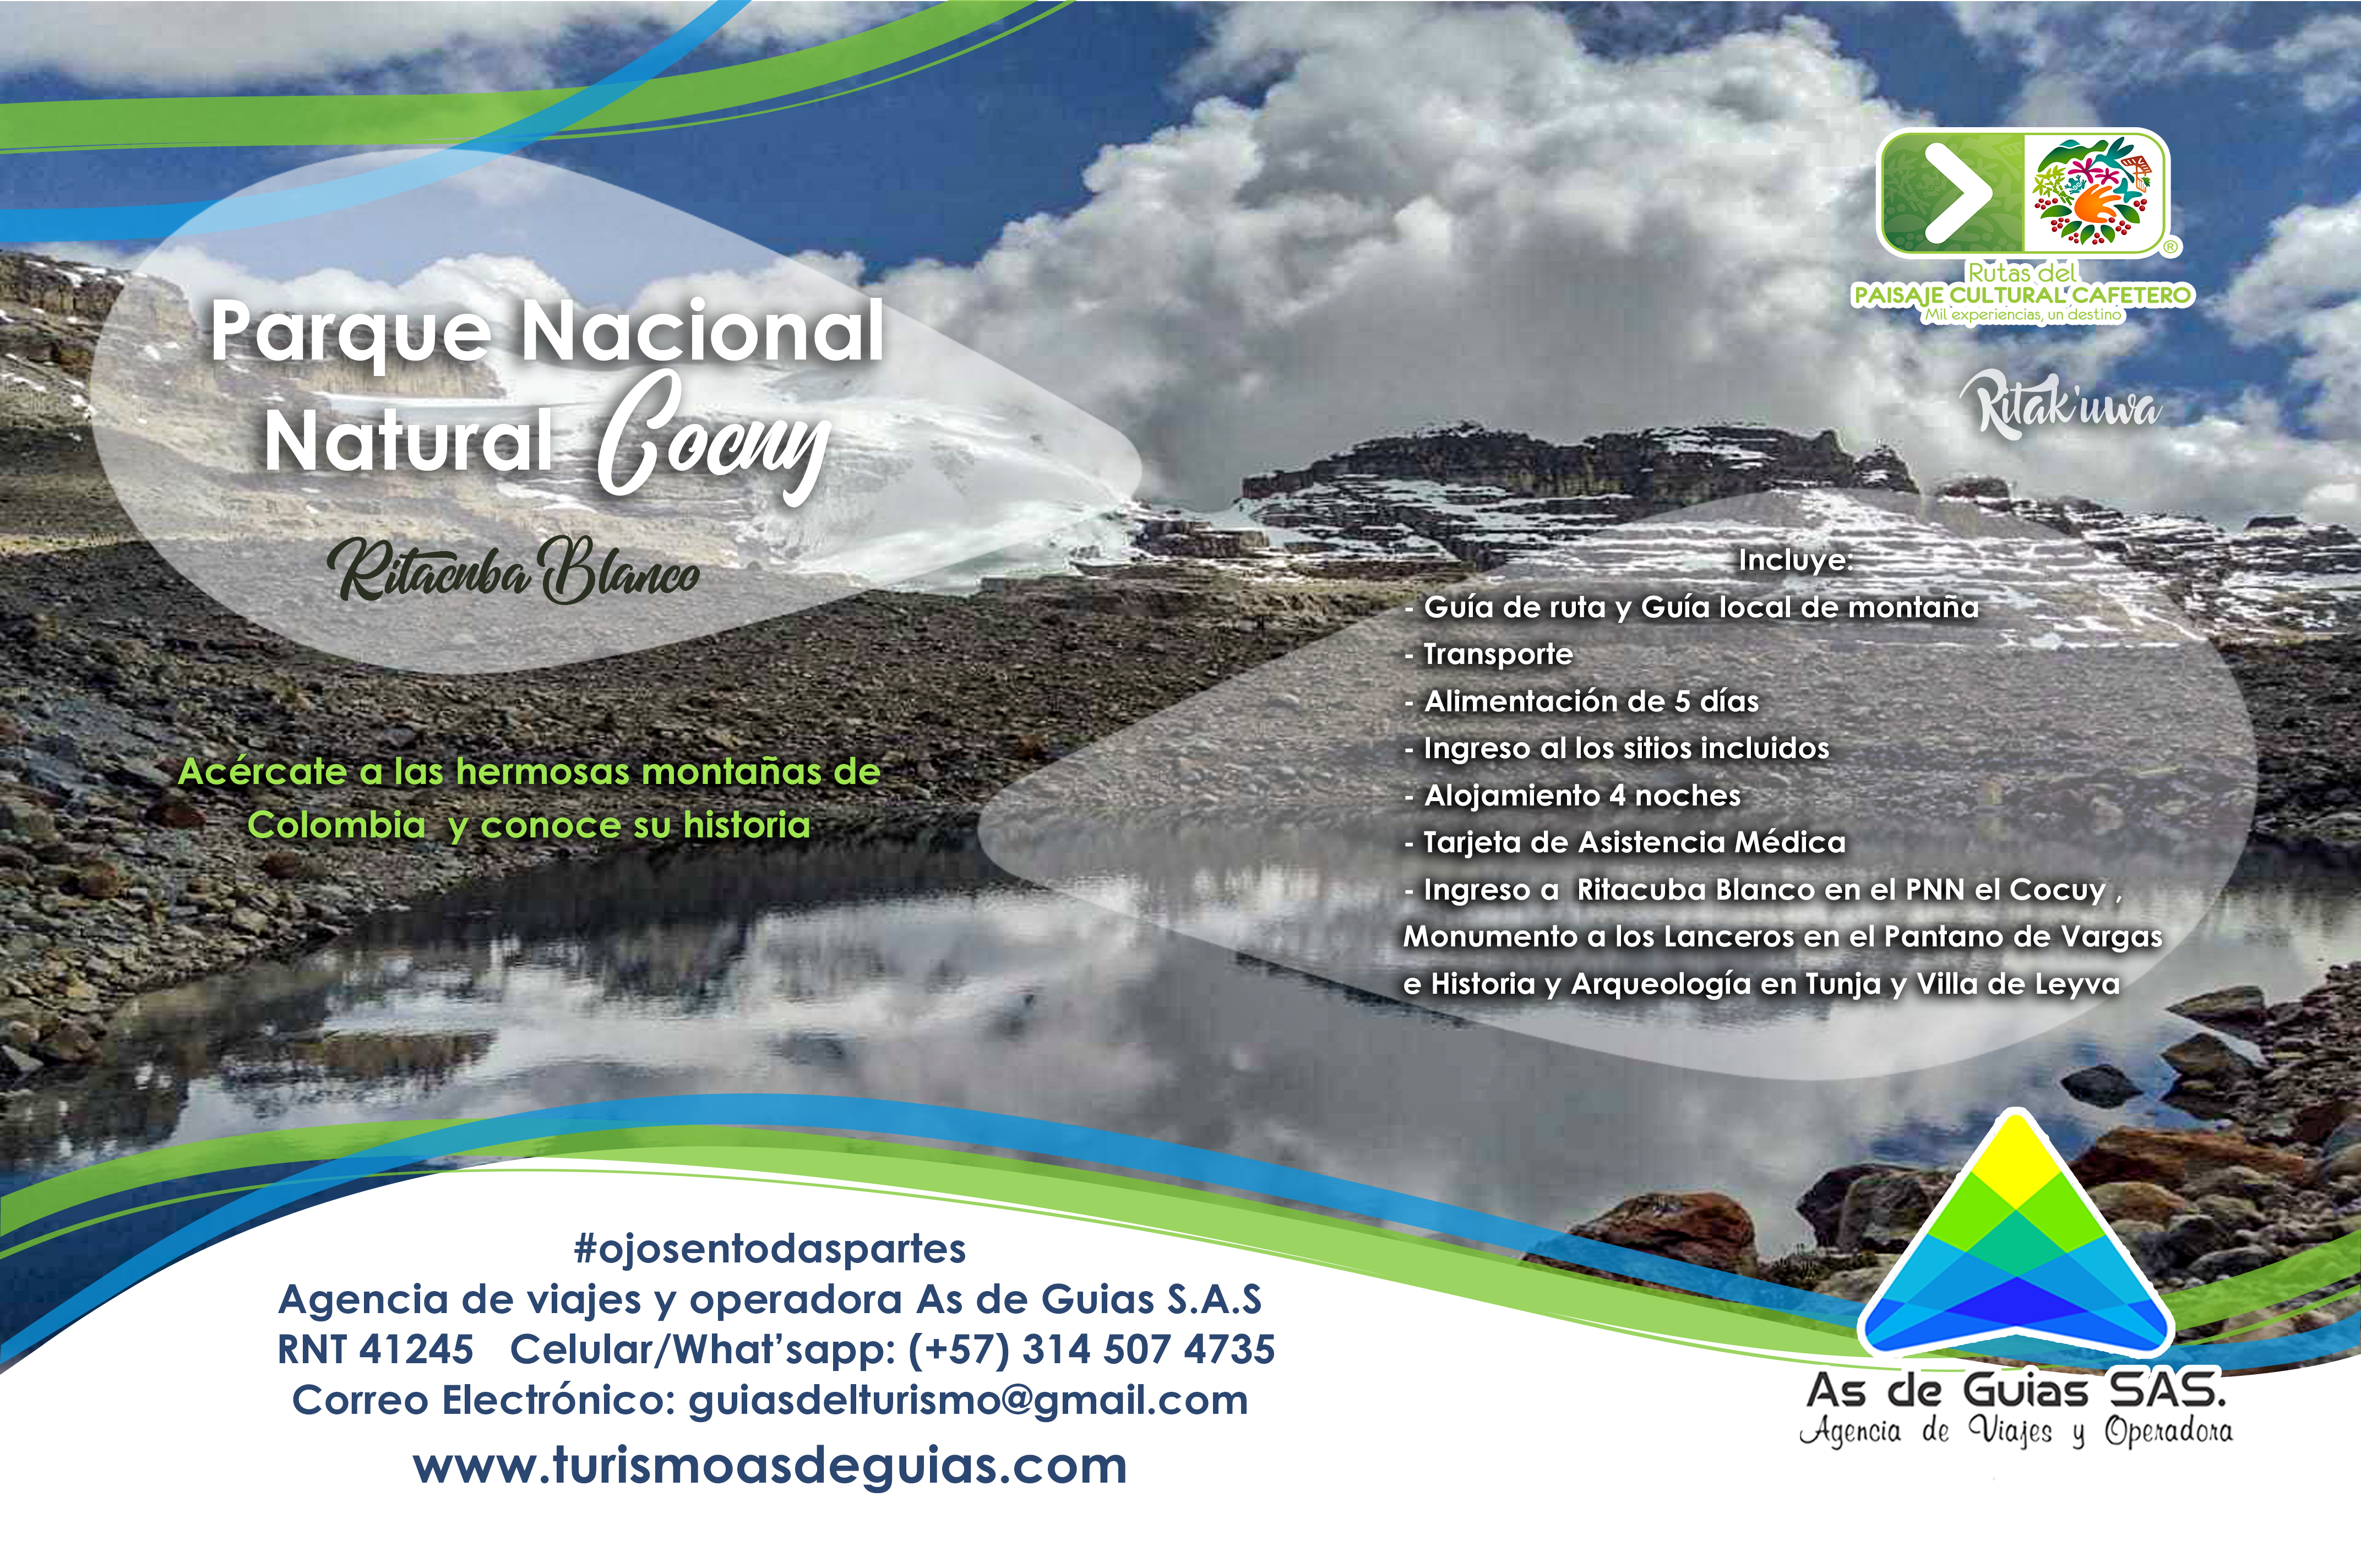 Parque Nacional Natural el Cocuy Ritacuba Blanco